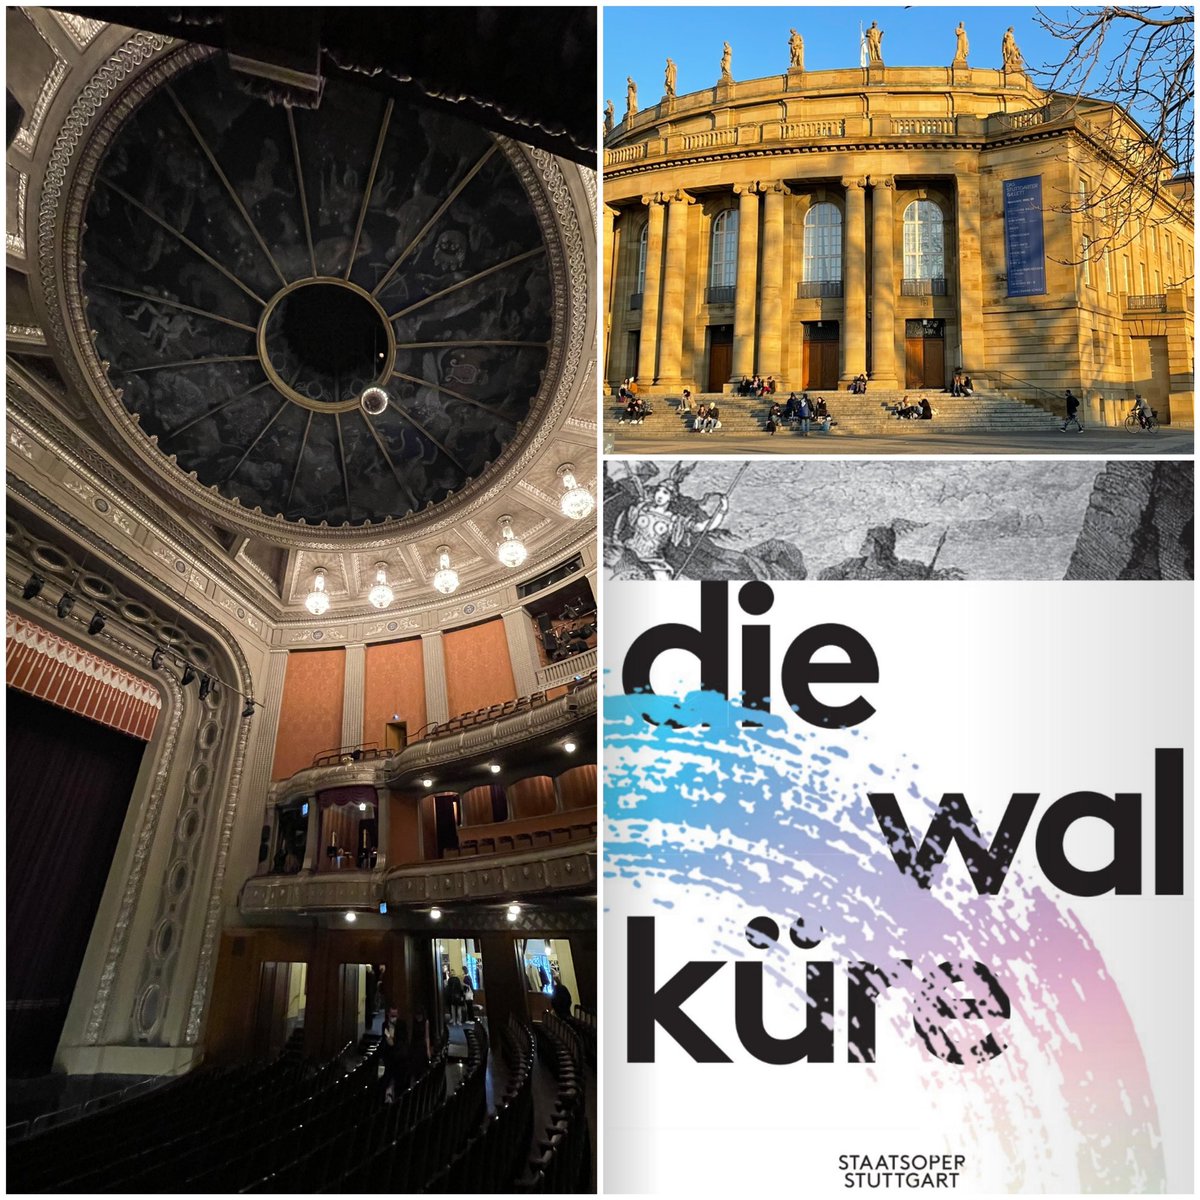 »Die #Walküre« in der @oper_stuttgart 
Monumental!
Mit dem großartigen, herausragenden @corn_iusmeister ! Jeder könnte hören, weshalb er in #Bayreuth die Festspiele eröffnen wird.
#Stuttgart #CorneliusMeister #oper #richardwagner